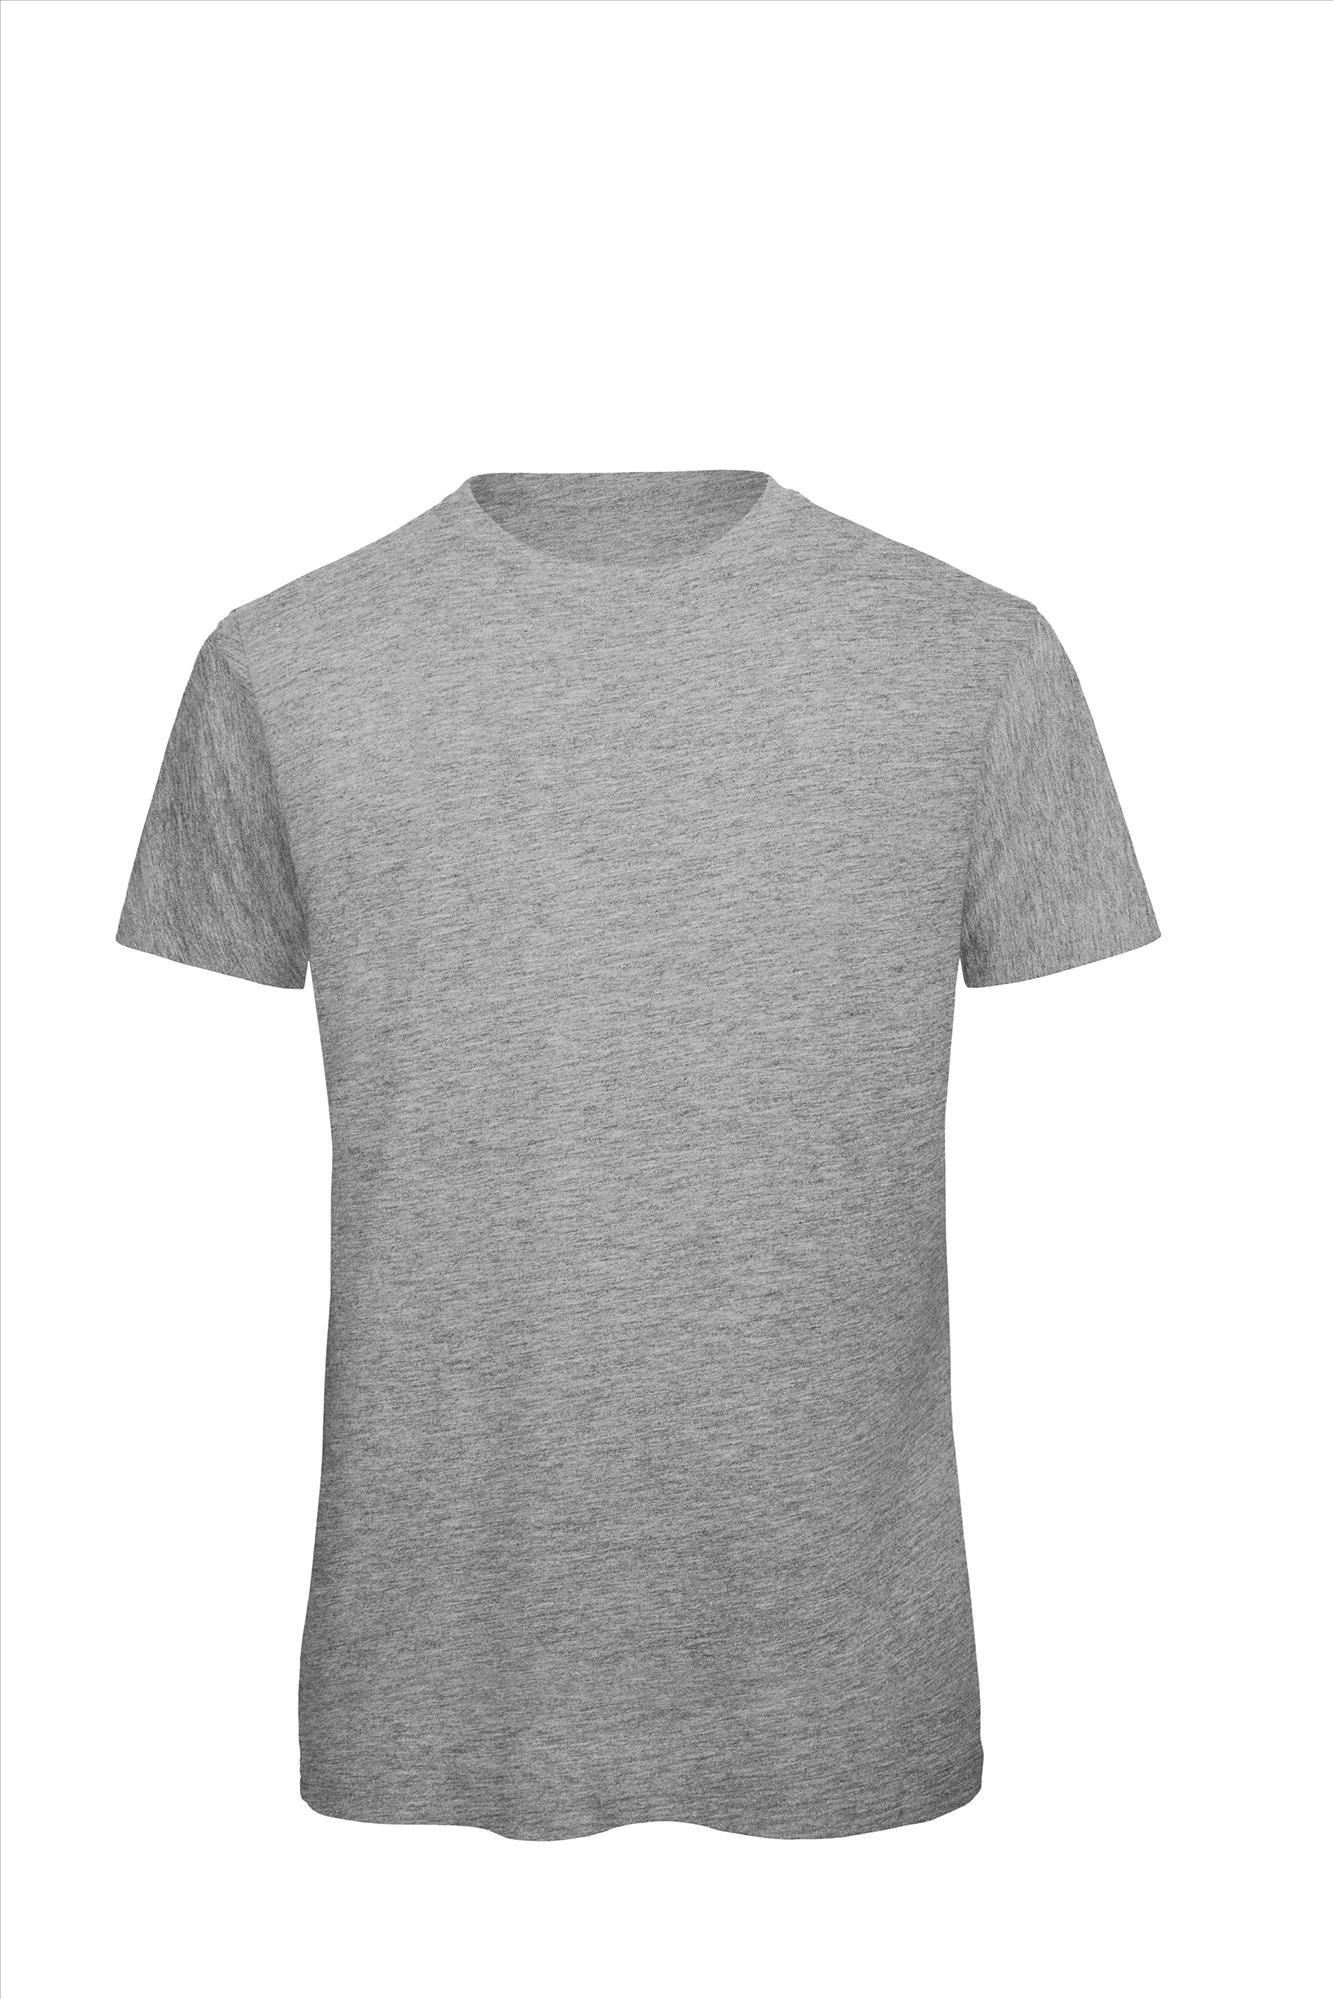 Heren T-shirt sport grijs te personaliseren bedrukbaar duurzaam shirt